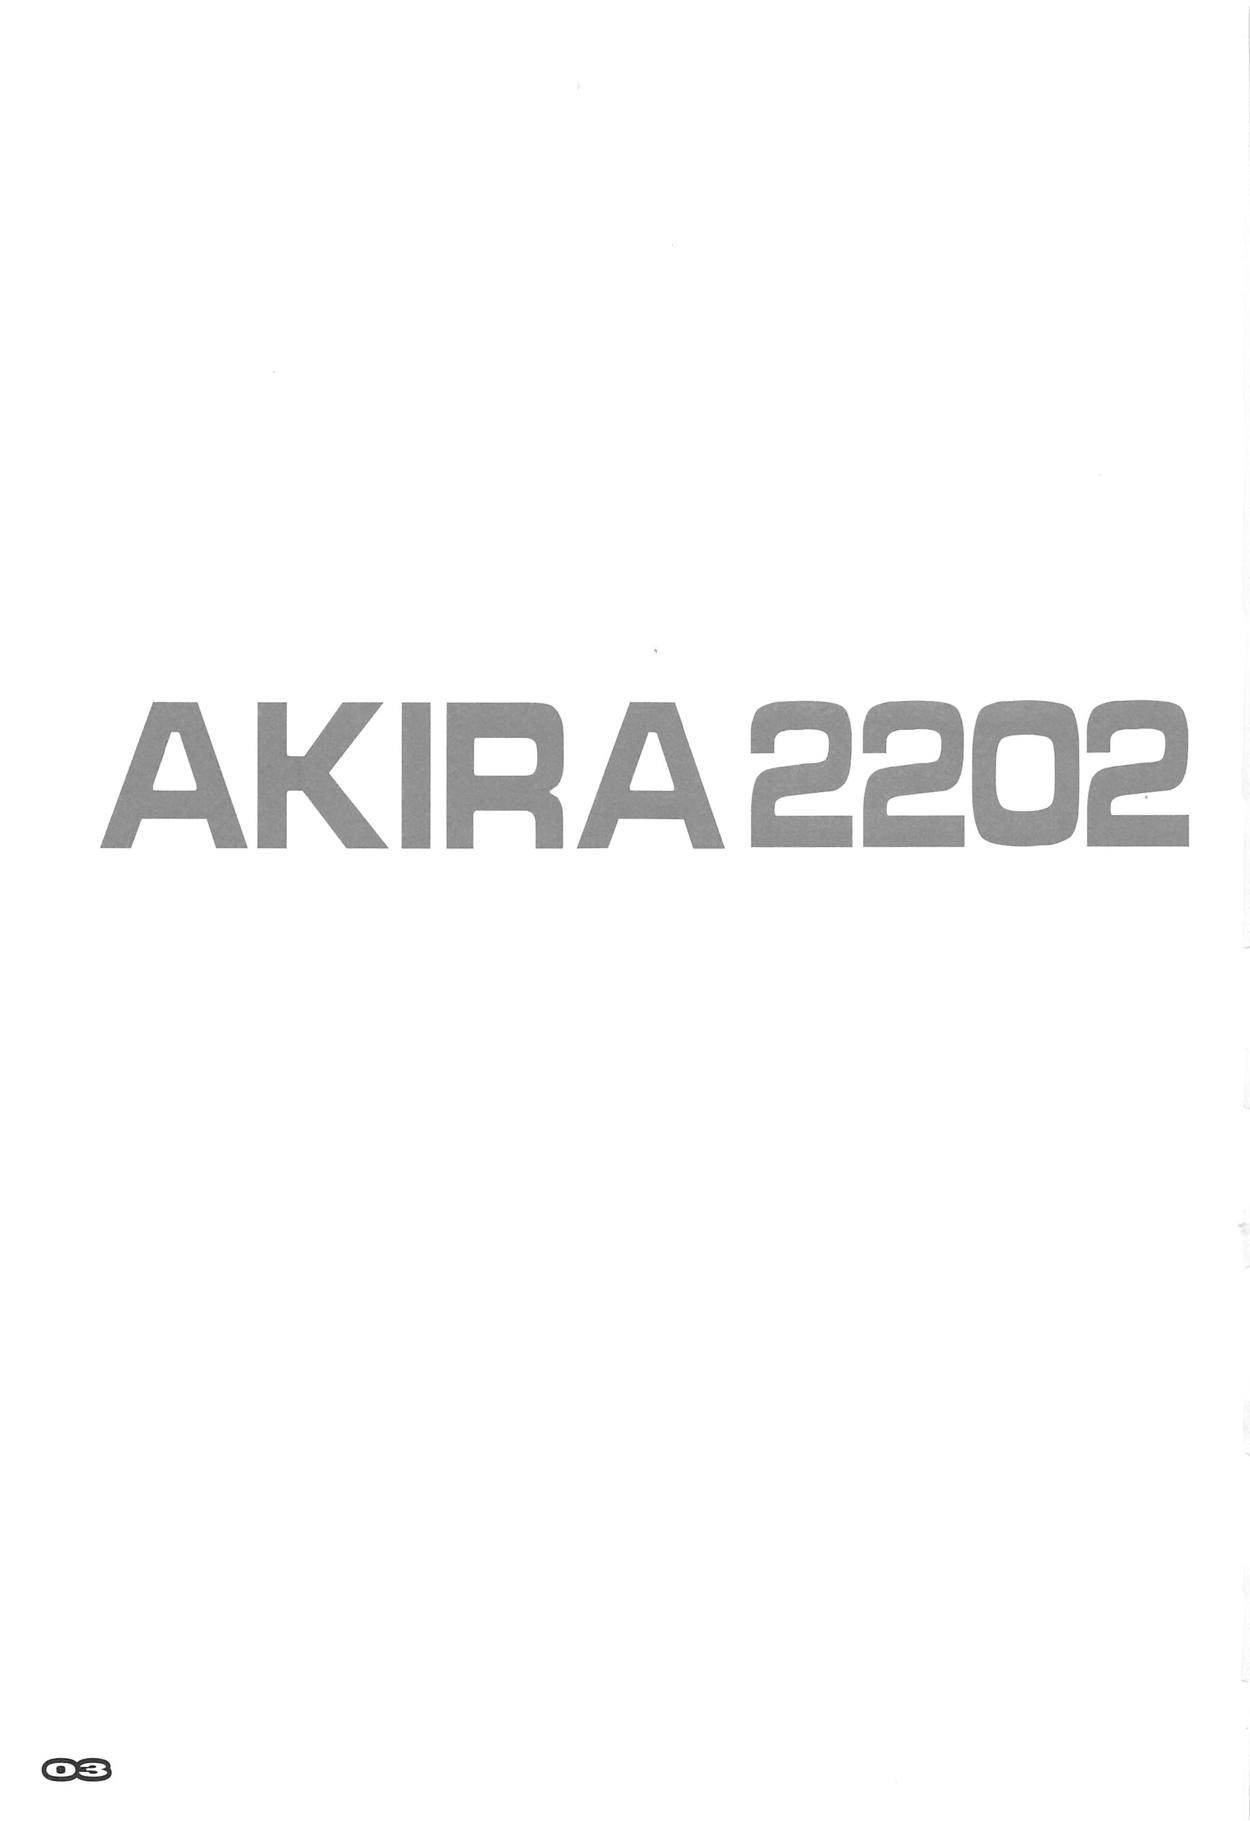 AKIRA2202 1